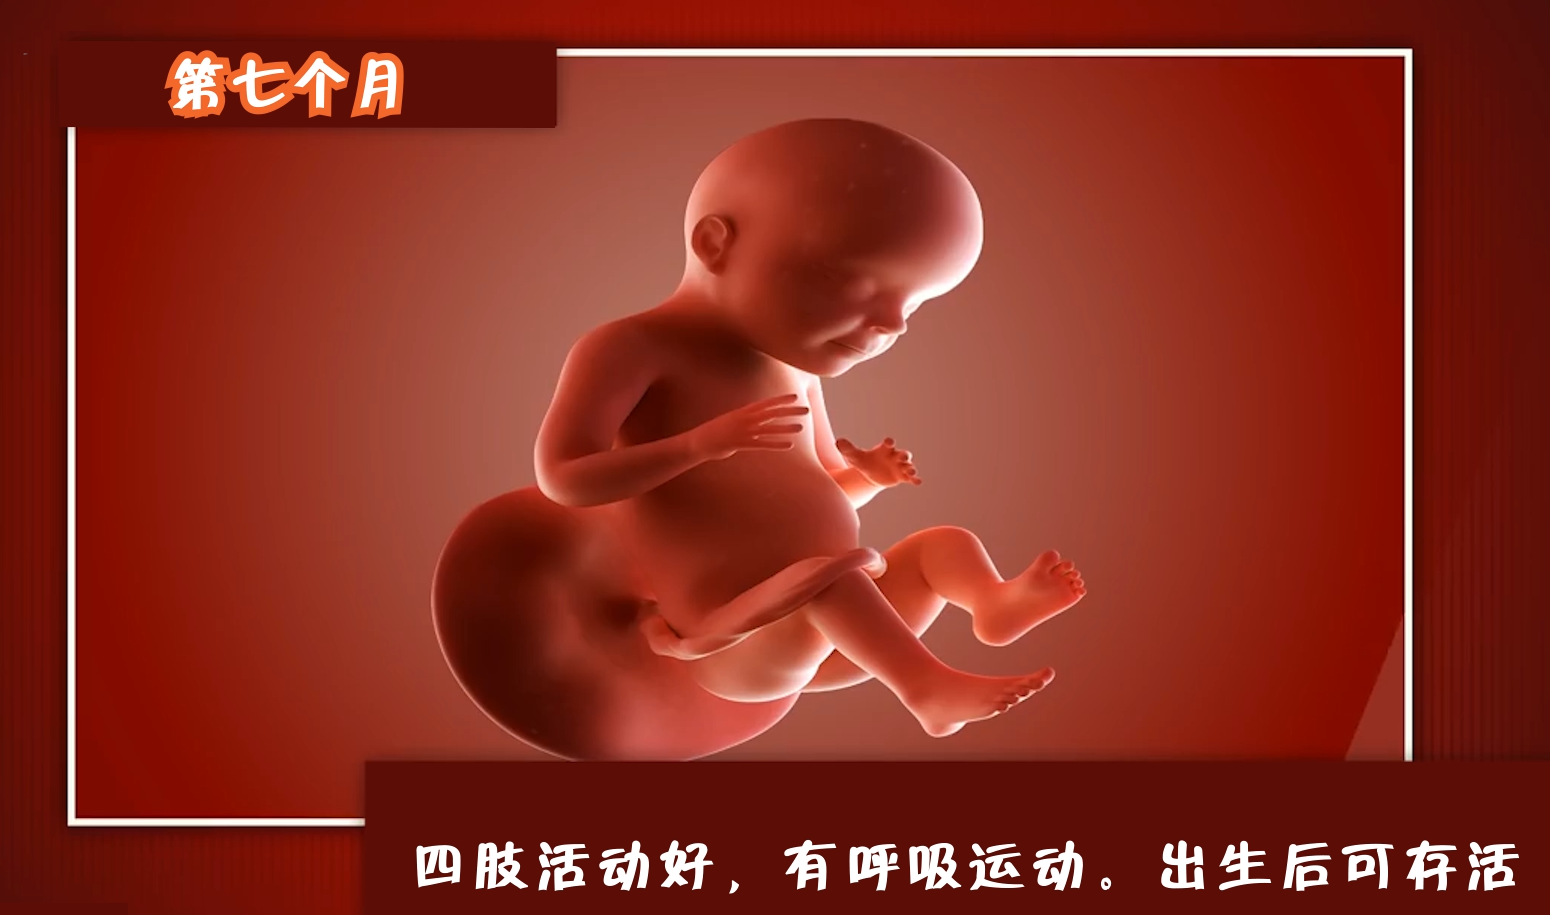 怀孕多久可以知道胎儿性别,孕妈们来看看胎儿的生长过程!